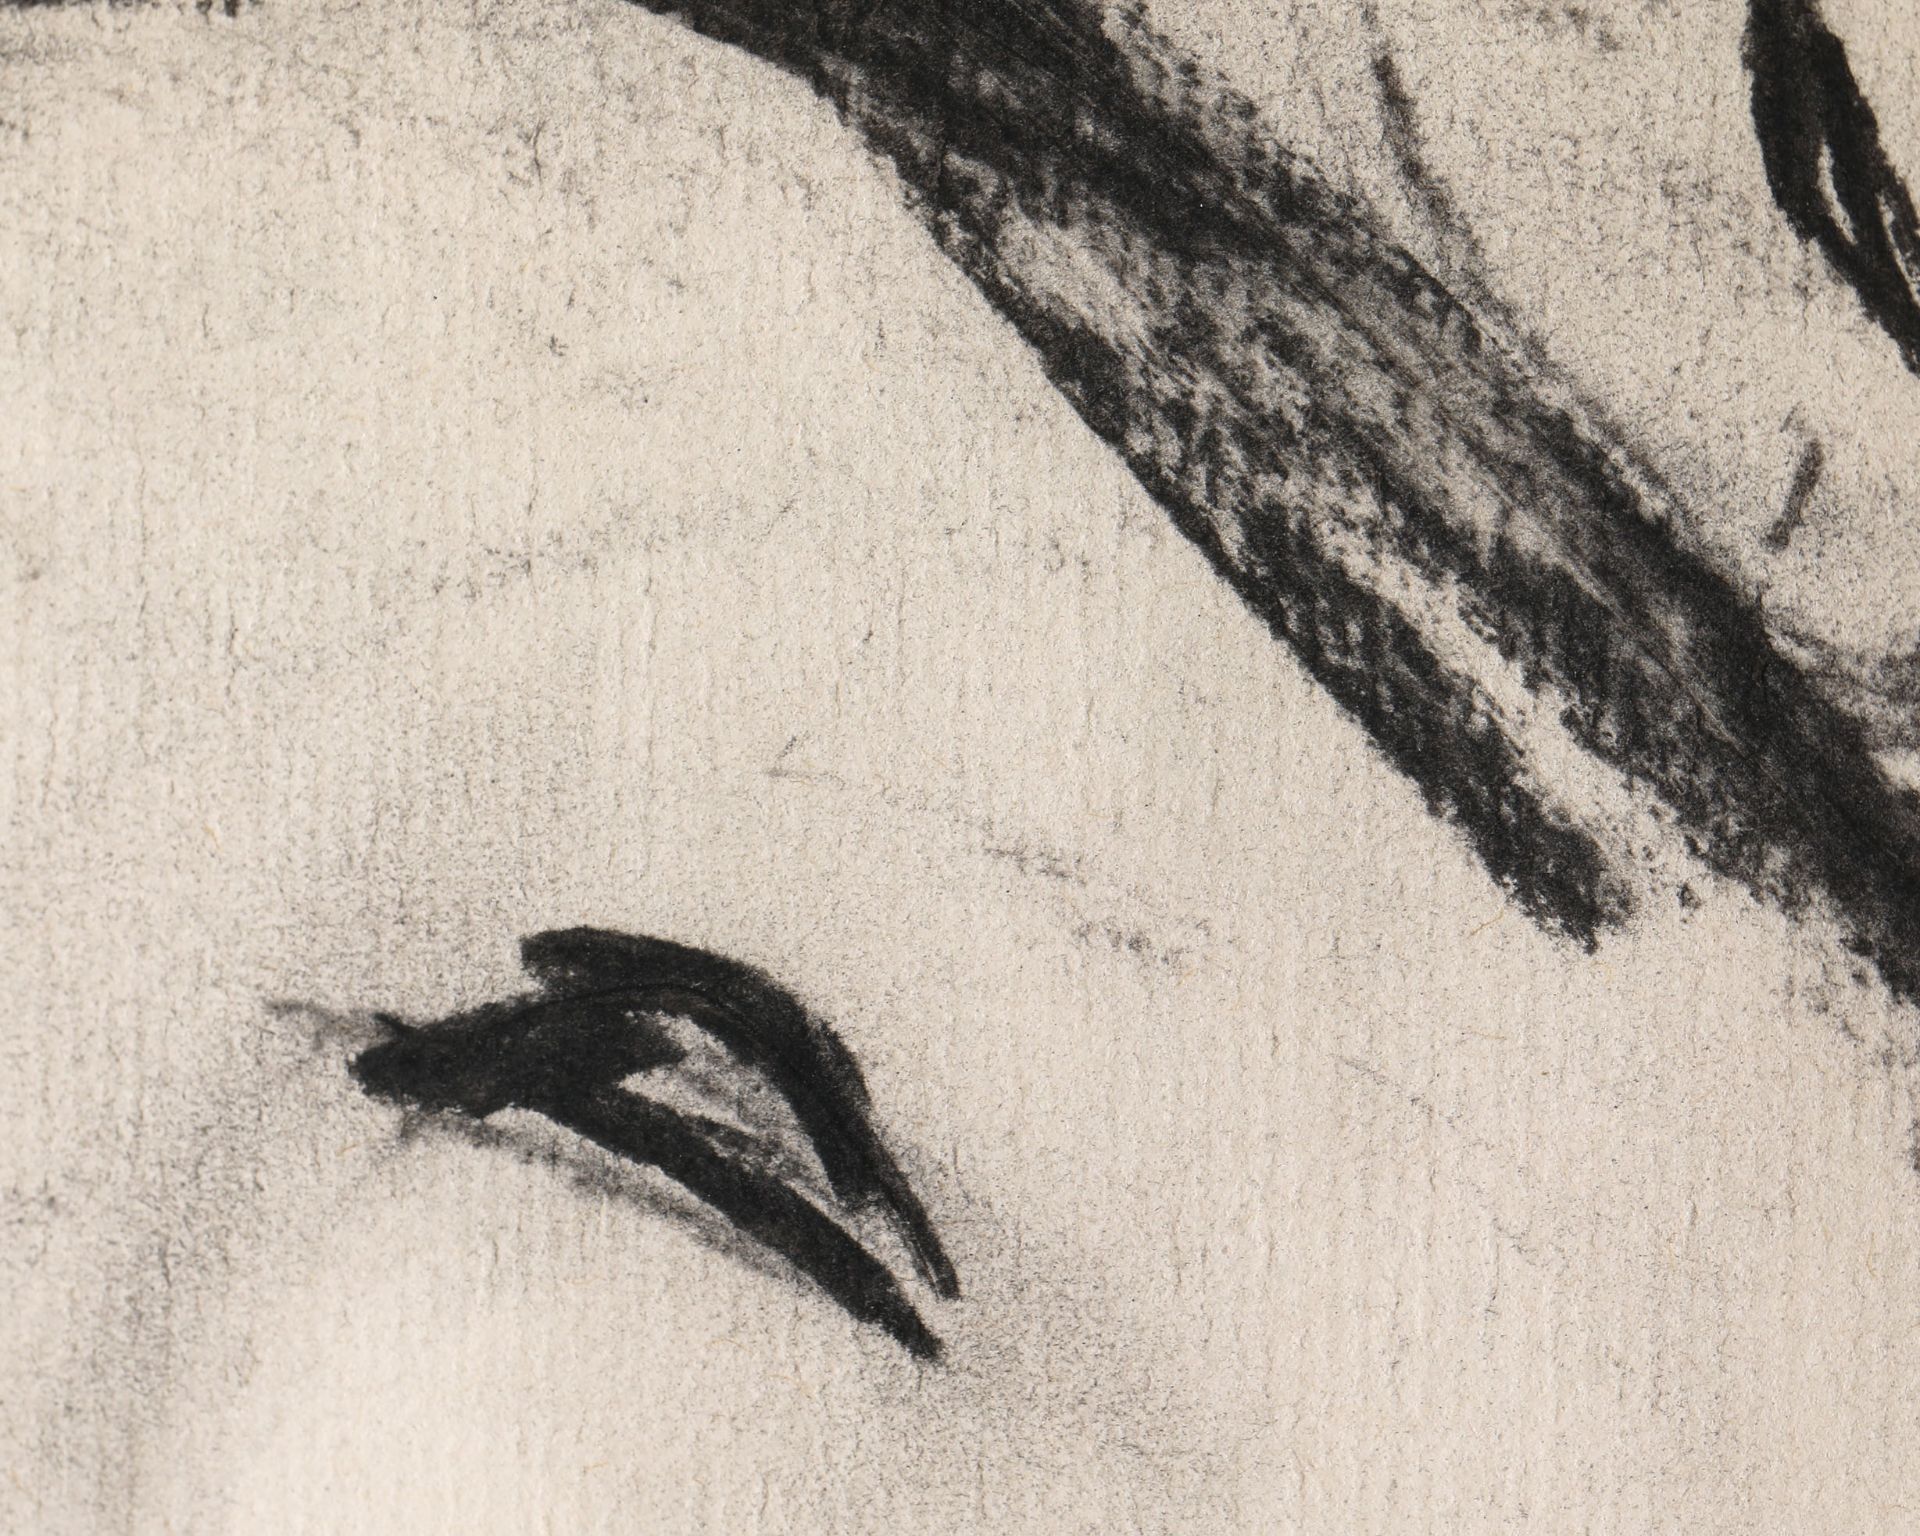 Leiko Ikemura, 1988, Kohlezeichnung - Bild 4 aus 4